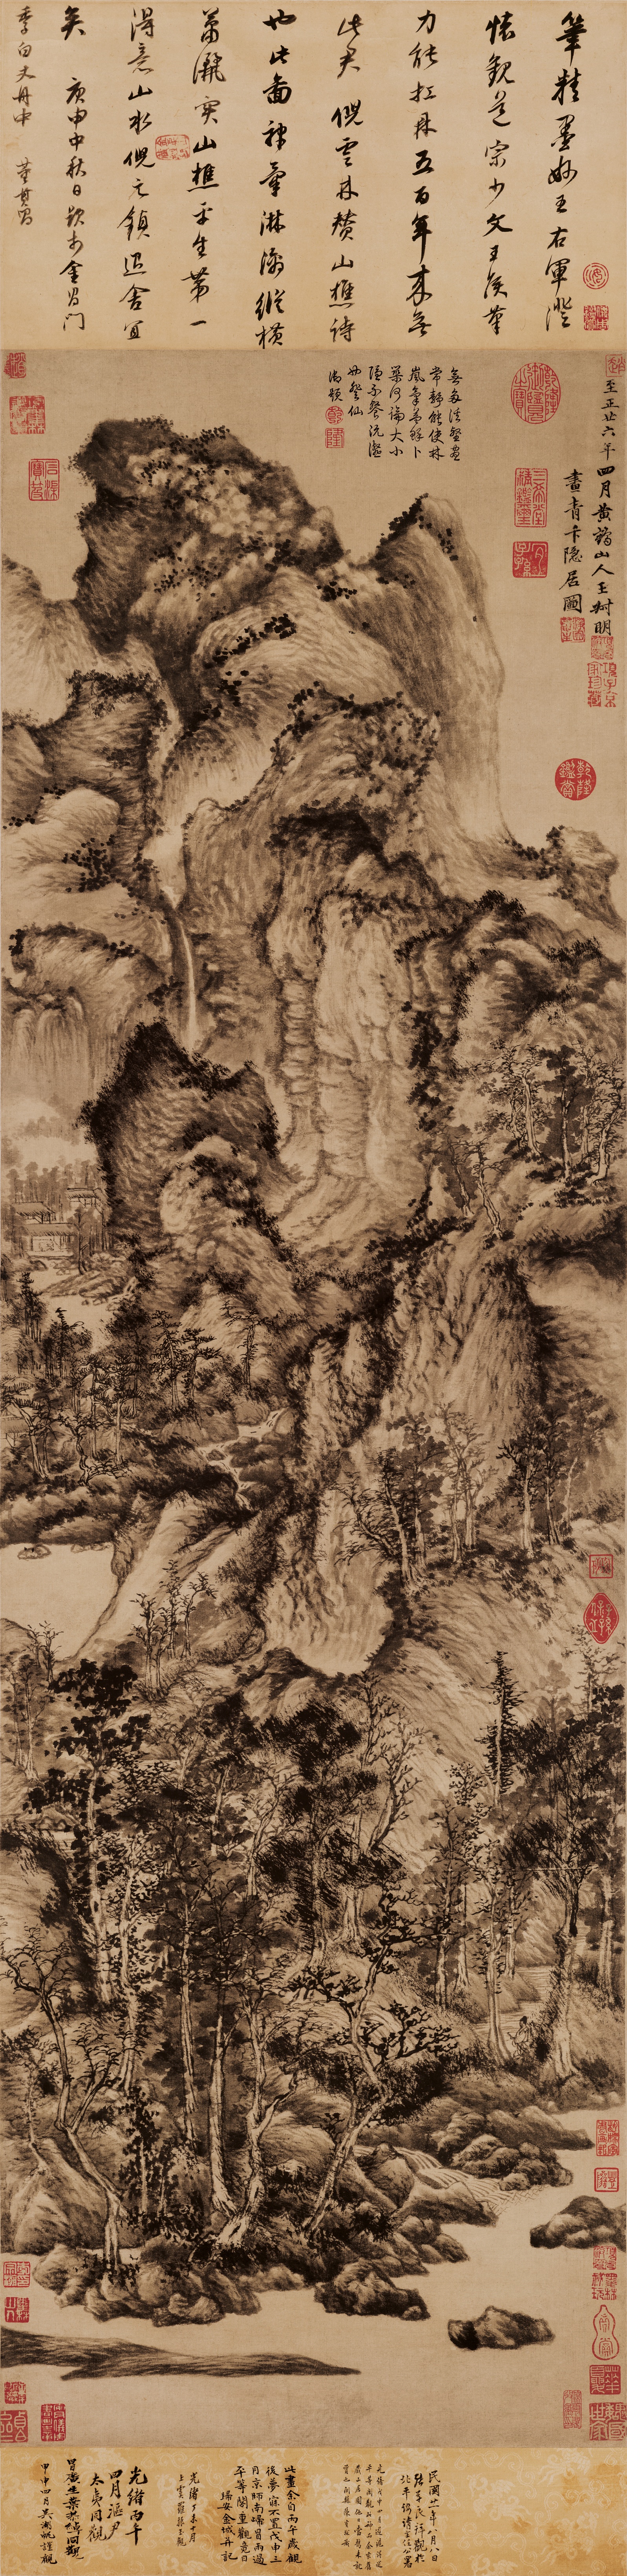 中国古代名画山水画作品,范宽溪山行旅图赏析-第17张图片